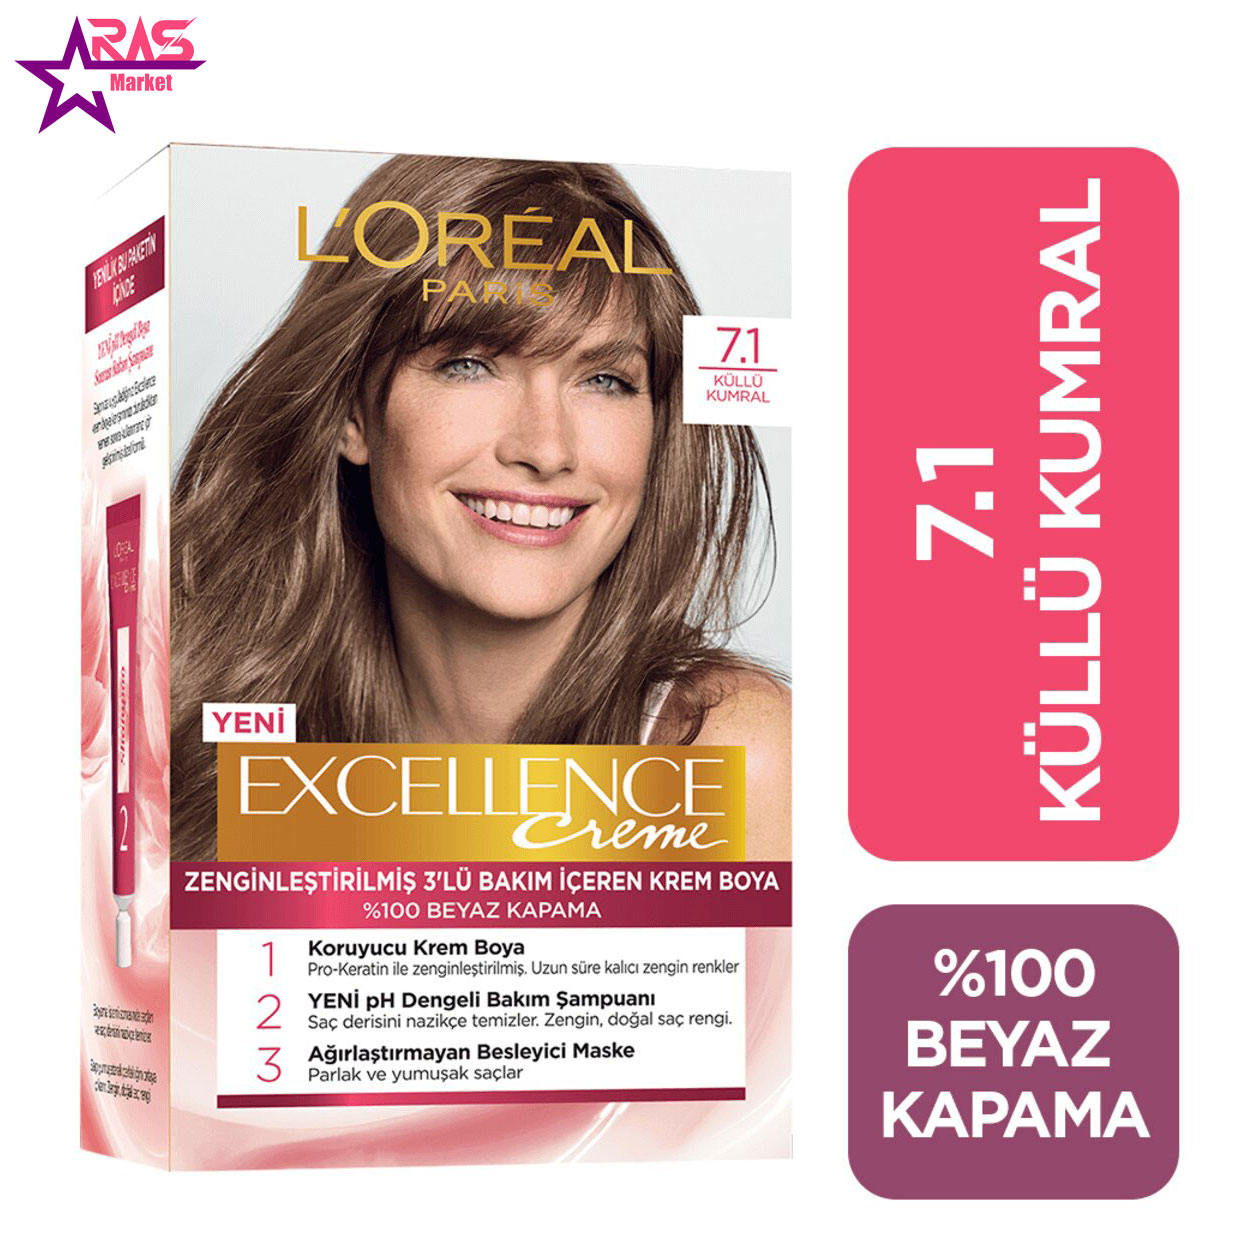 کیت رنگ مو لورآل سری Excellence شماره 7.1 ، فروشگاه اینترنتی ارس مارکت ، بهداشت بانوان